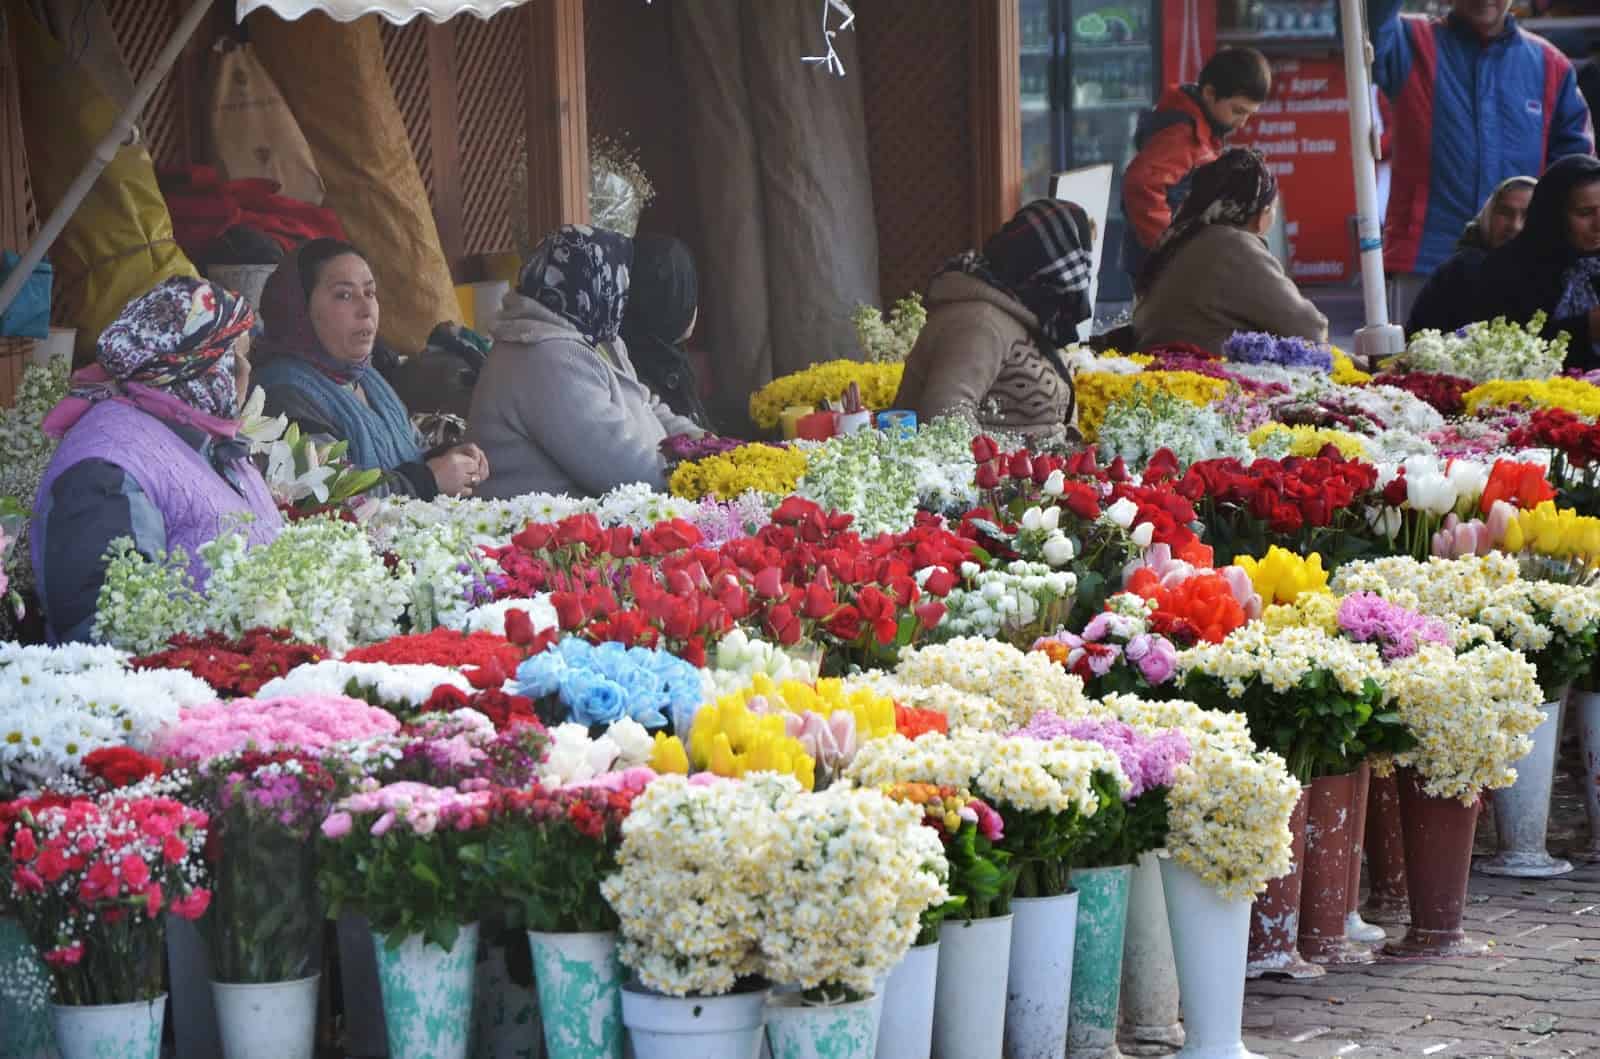 Women selling flowers outside the Üsküdar ferry terminal in Üsküdar, Istanbul, Turkey